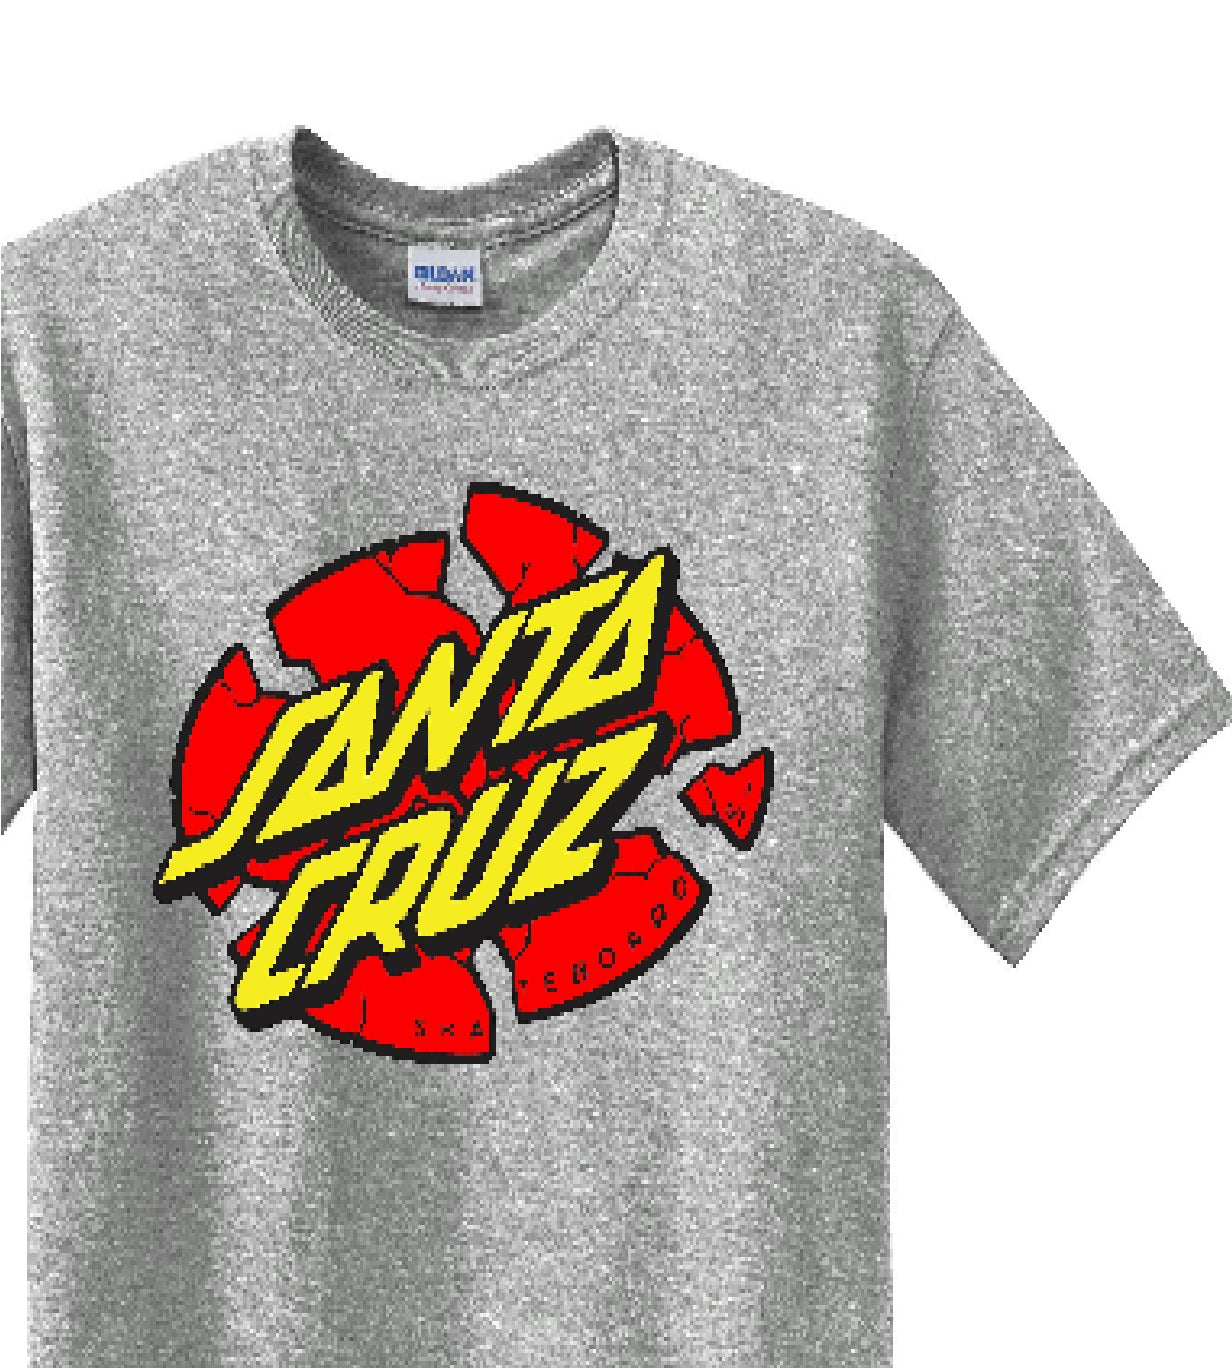 Skate Men's Shirt - Santa Cruz (Gray) - MYSTYLEMYCLOTHING